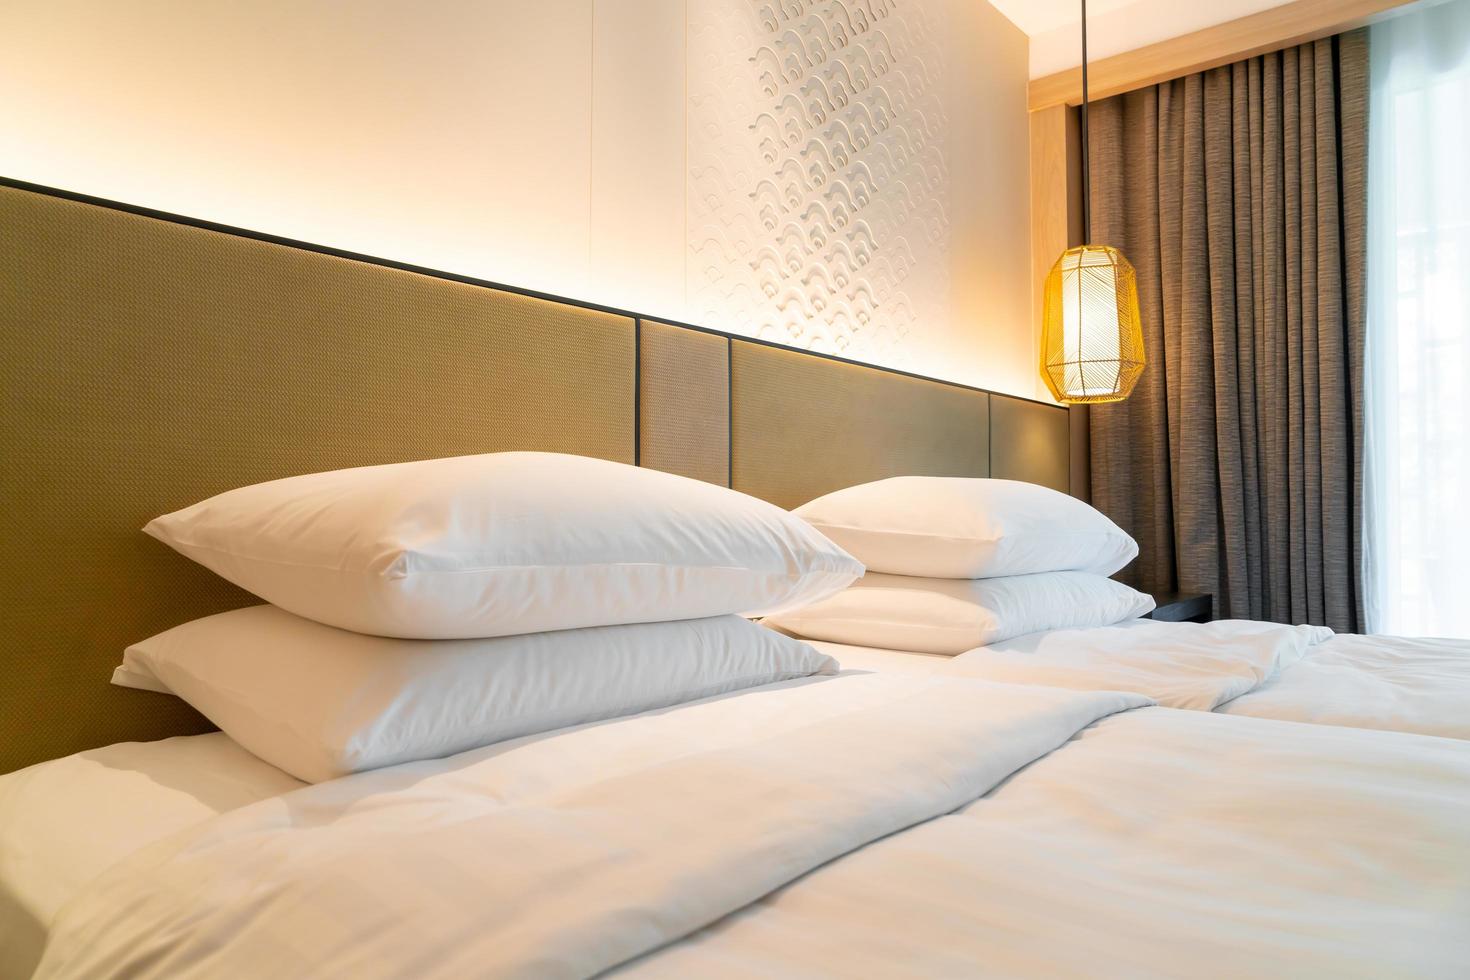 Decoración de almohada blanca en la cama en un dormitorio de hotel resort foto